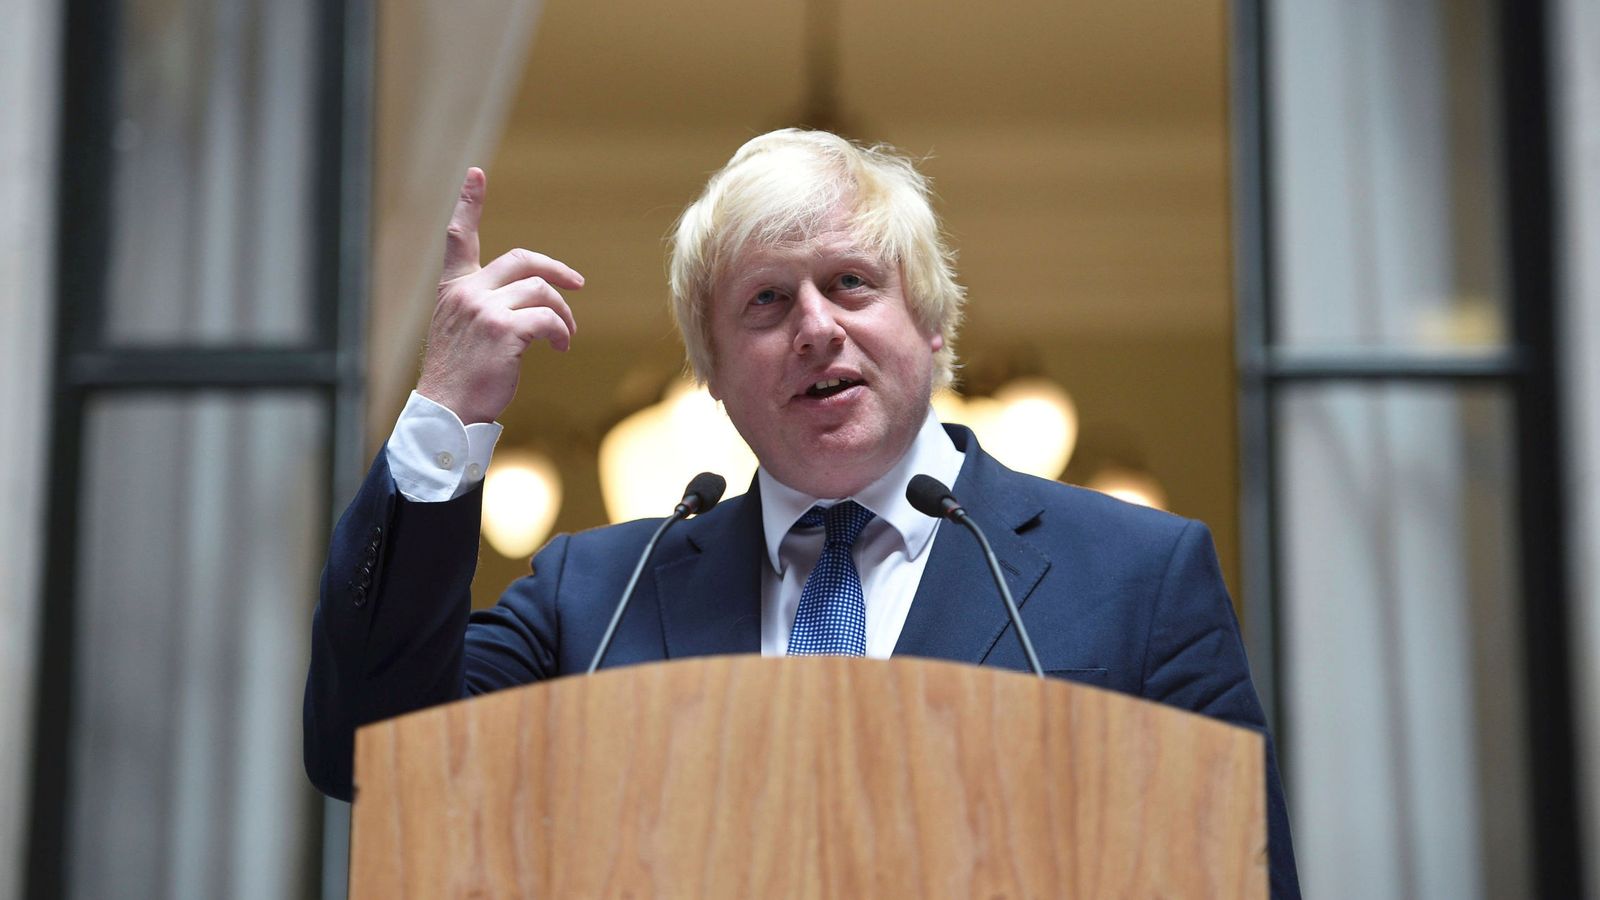 Foto: Boris Johnson, ¿tiene parecidos entre los políticos españoles?